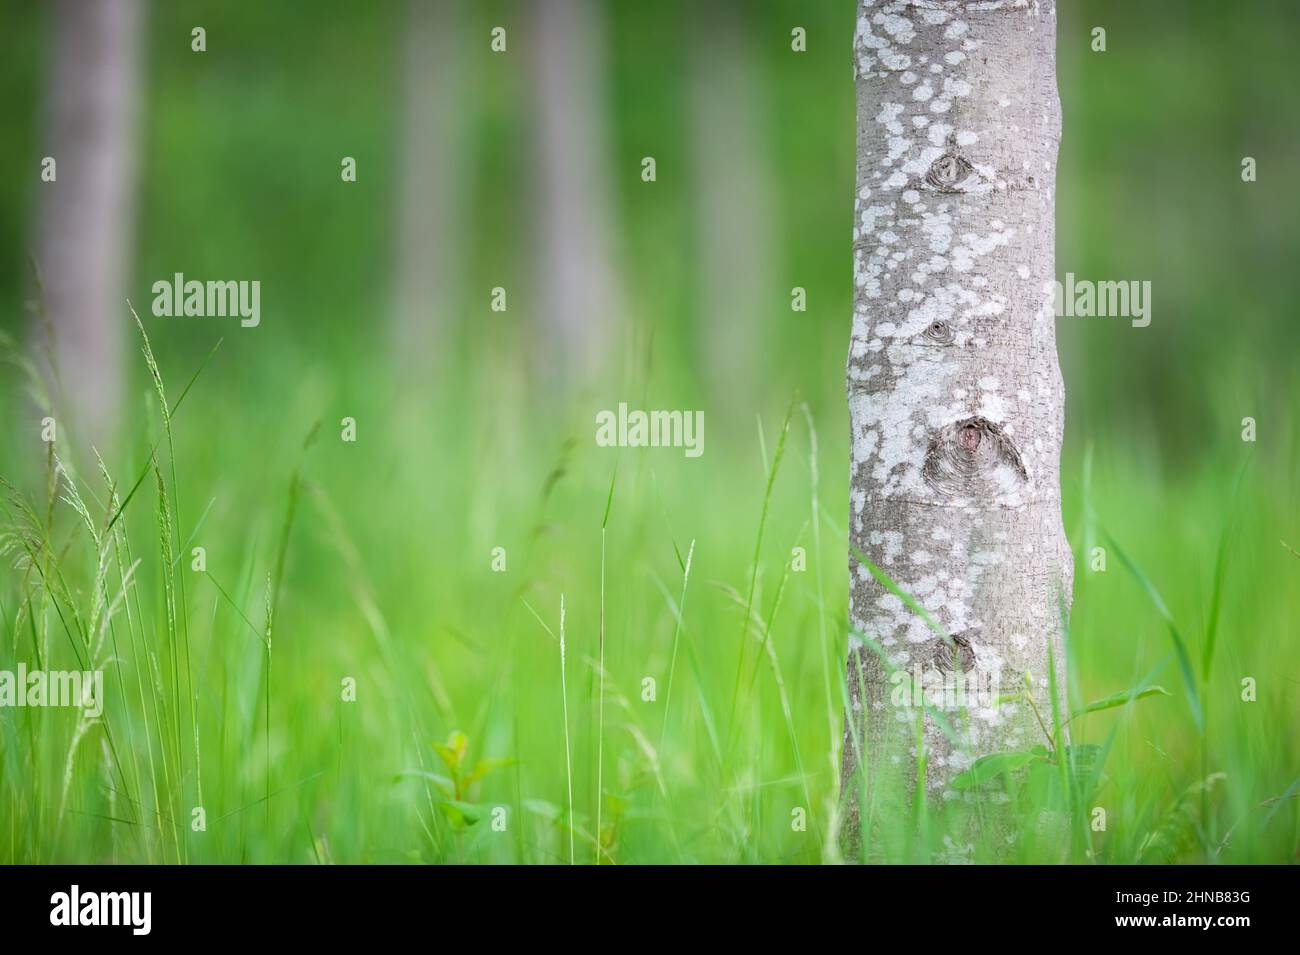 Troncs de l'Alder noir (Alnus glutinosa). Concentrez-vous sur le tronc de l'arbre de premier plan, faible profondeur de champ. Banque D'Images